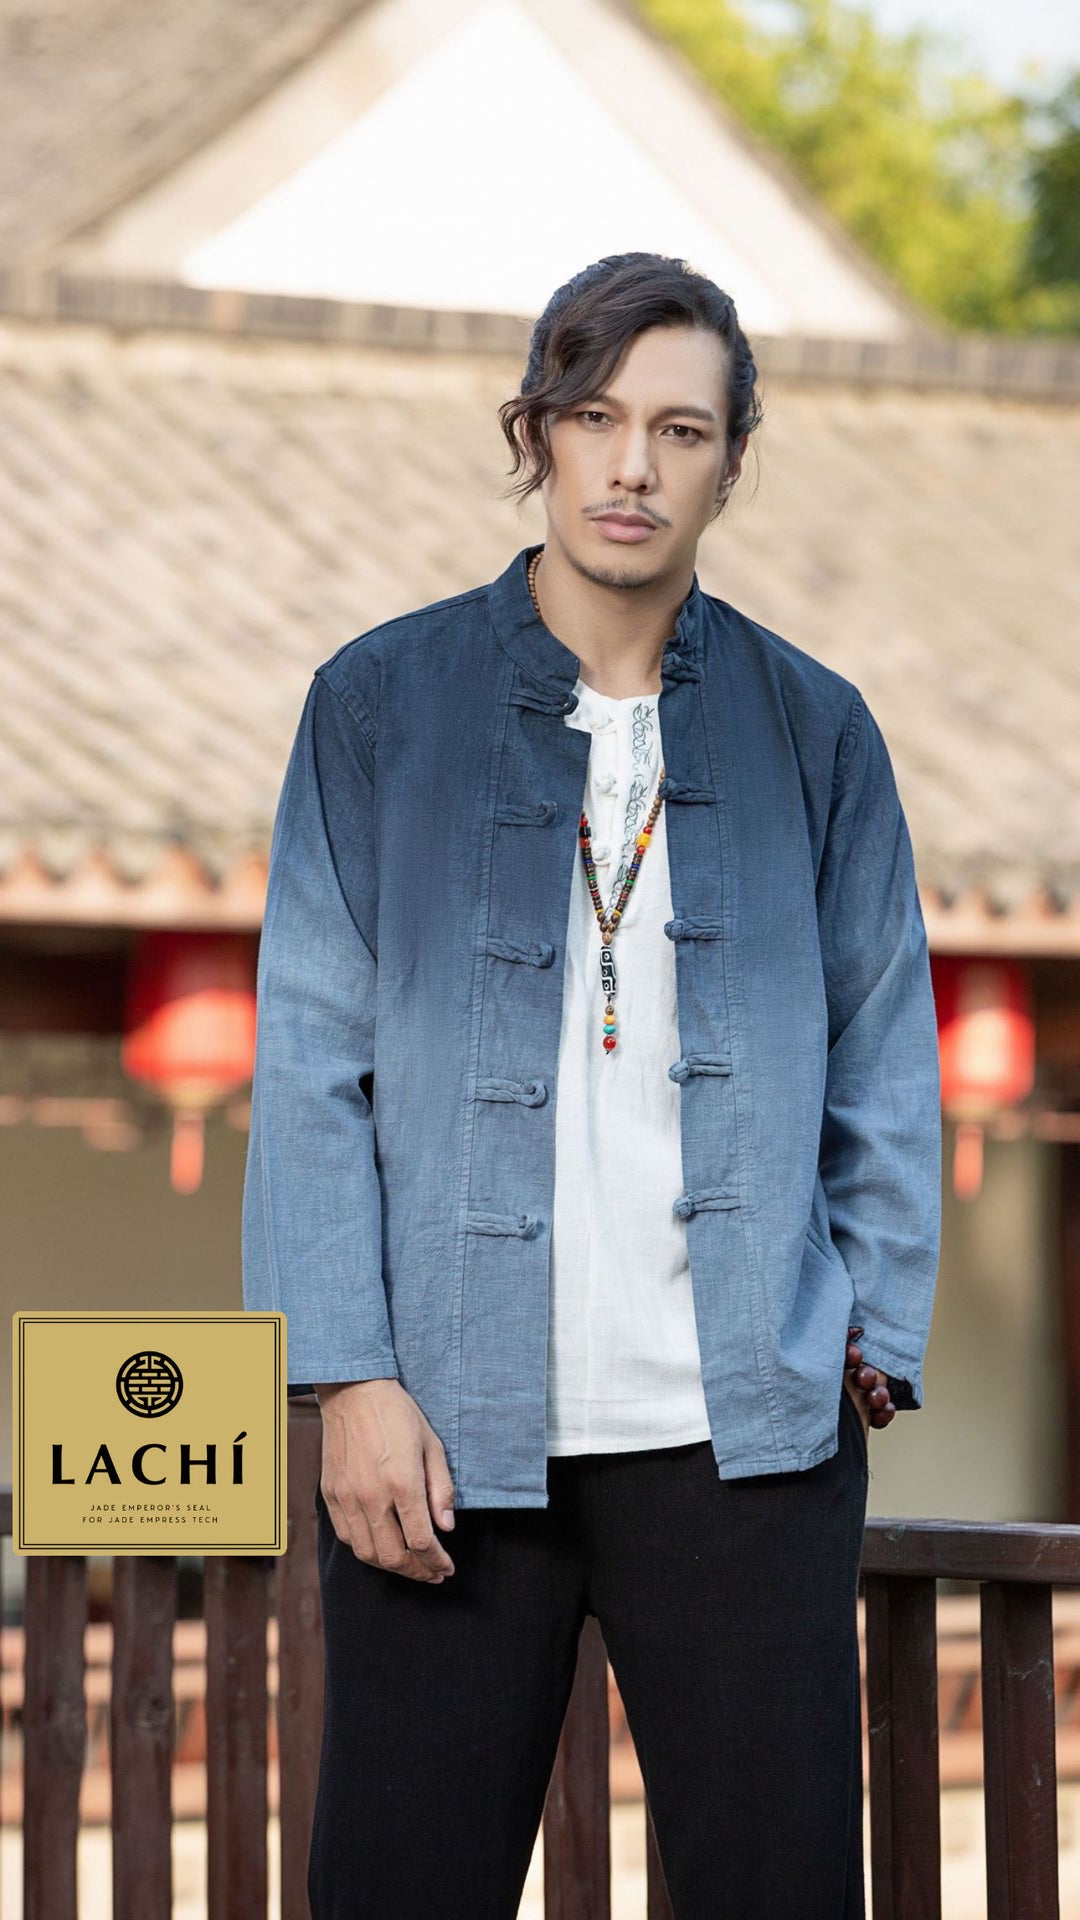 The Dao 道 of Zen Emperor's Gradient Blue Qigong Top & Jacket • Breathable • Gender Neutral